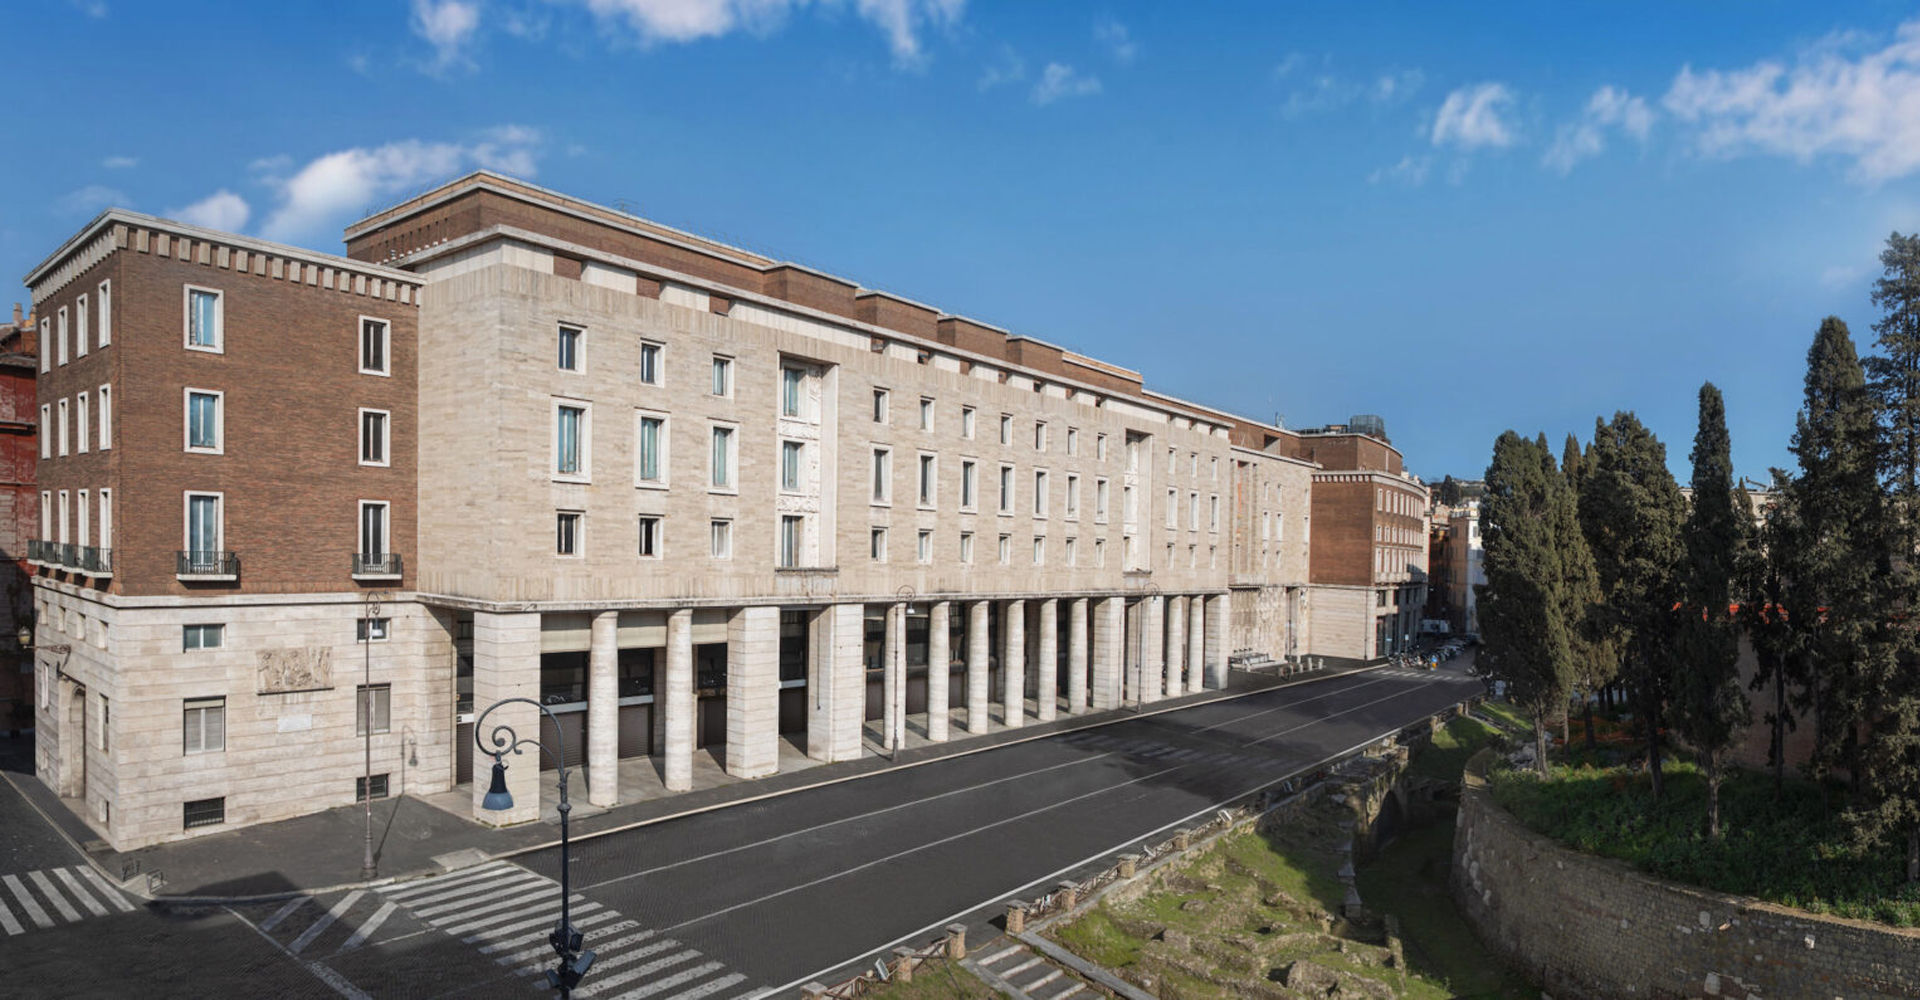 CARRON SPA REALIZZA IL NUOVO HOTEL BVLGARI ROMA: L’INTERVENTO COMMISSIONATO DA EDIZIONI PROPERTY